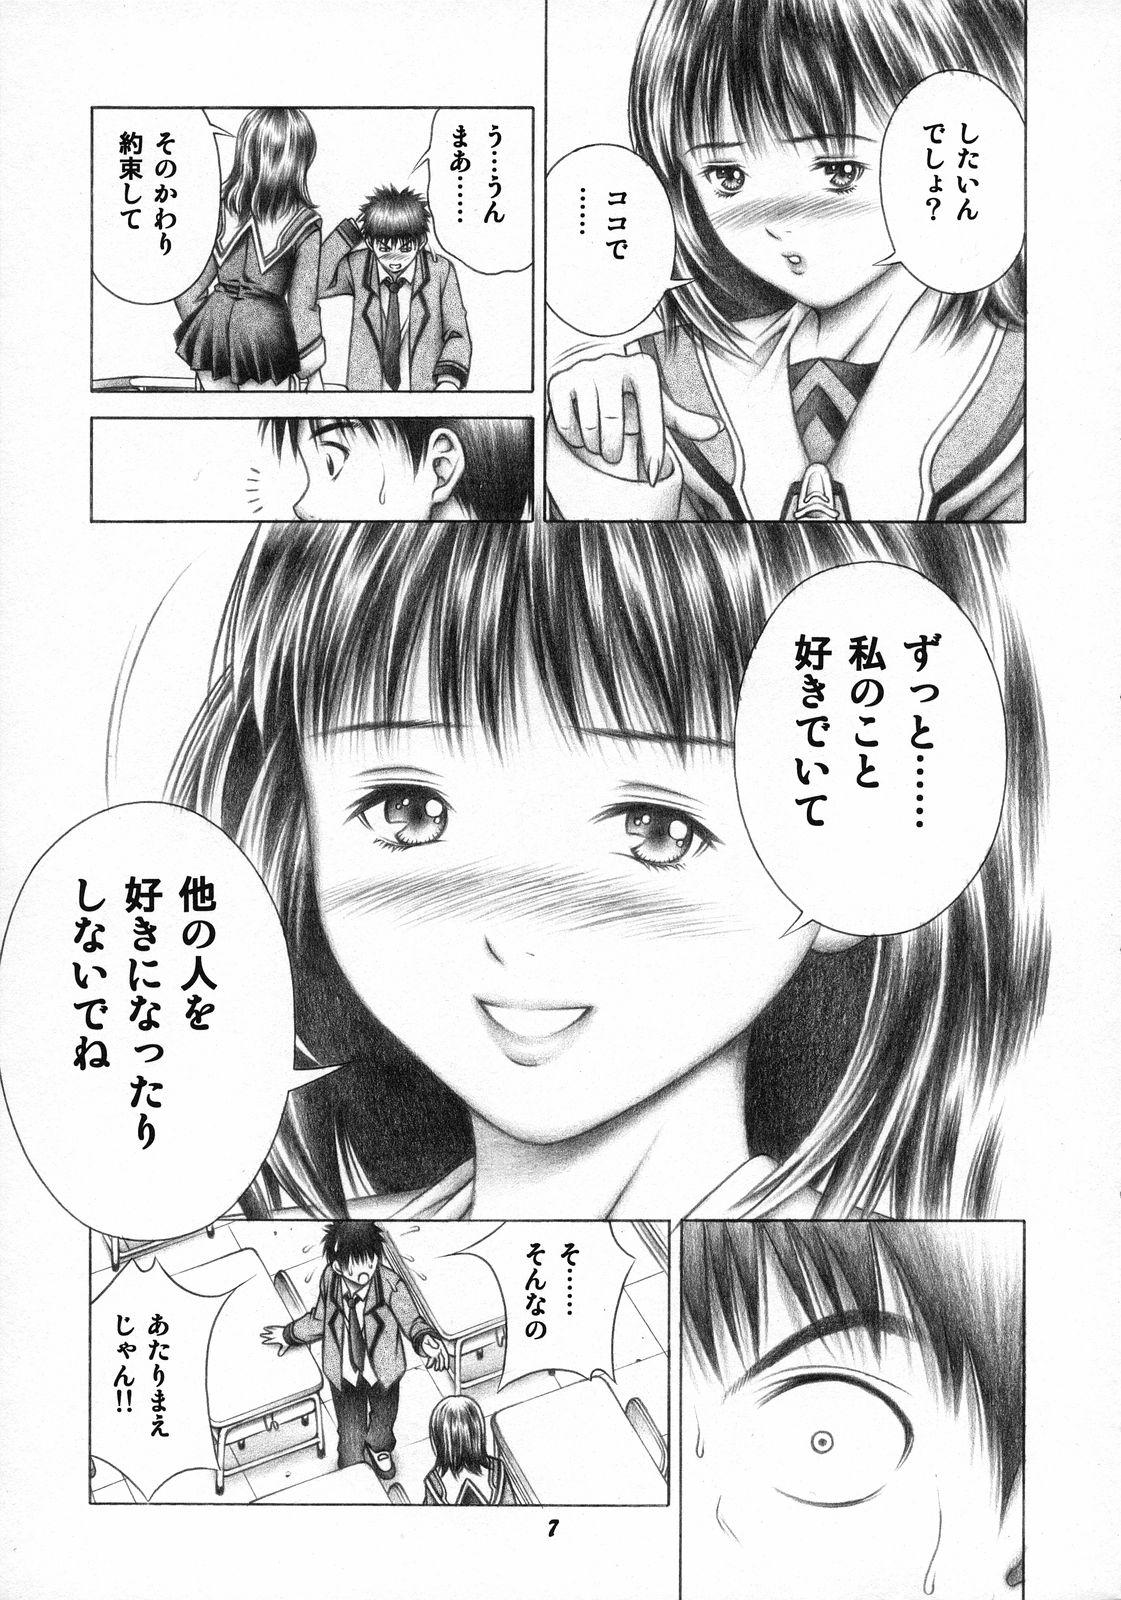 She Iori to Fuwafuwarin - Is Girlfriend - Page 6